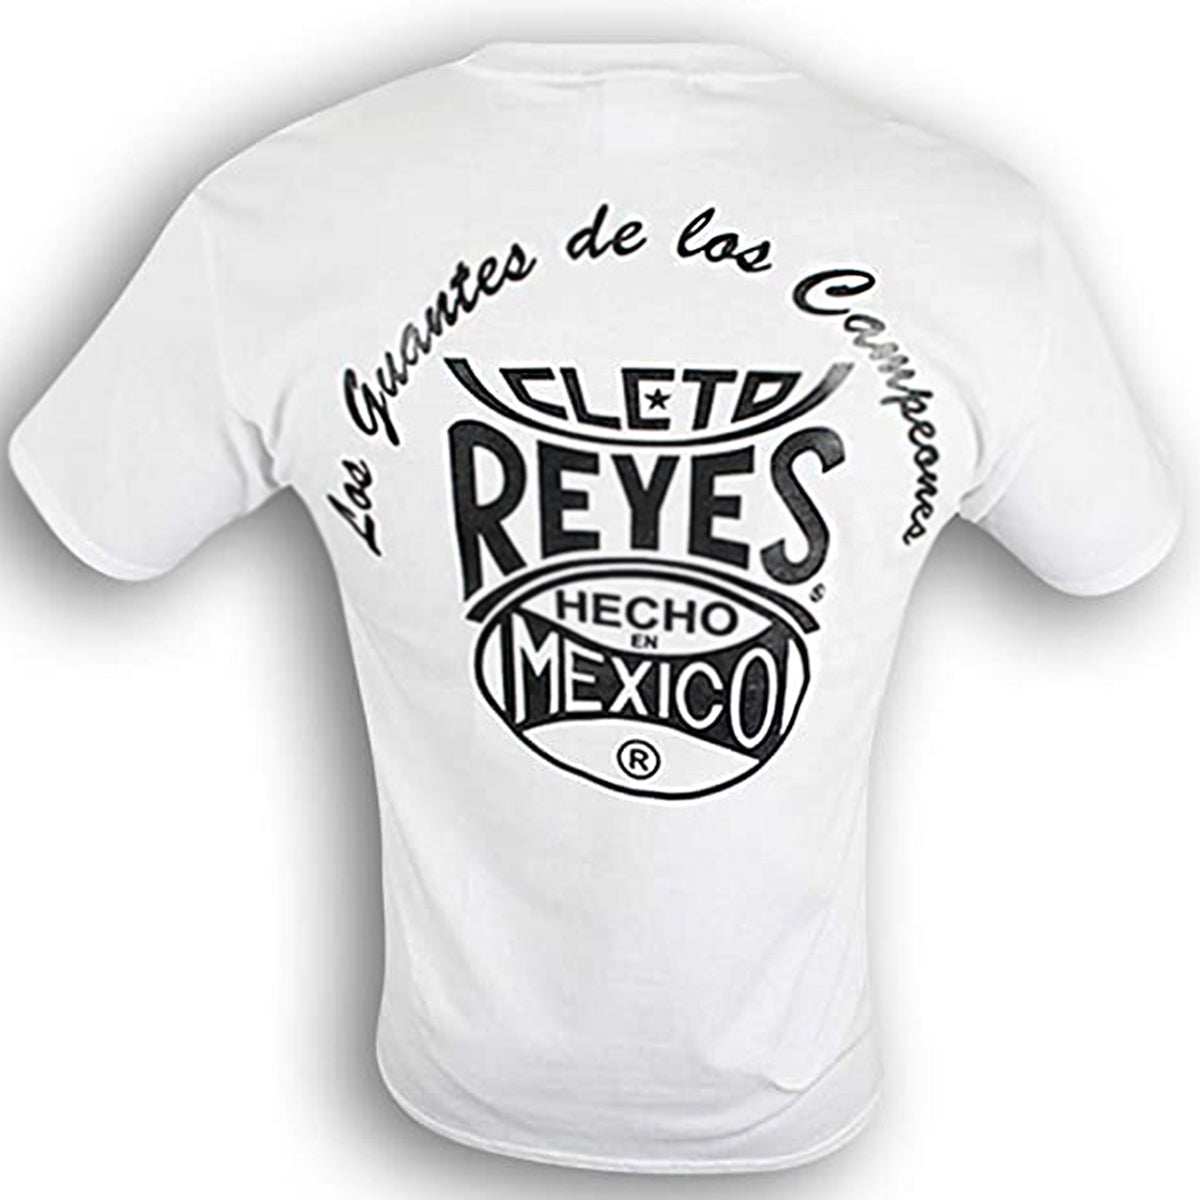 Cleto Reyes Champy T-Shirt - Large - White Cleto Reyes